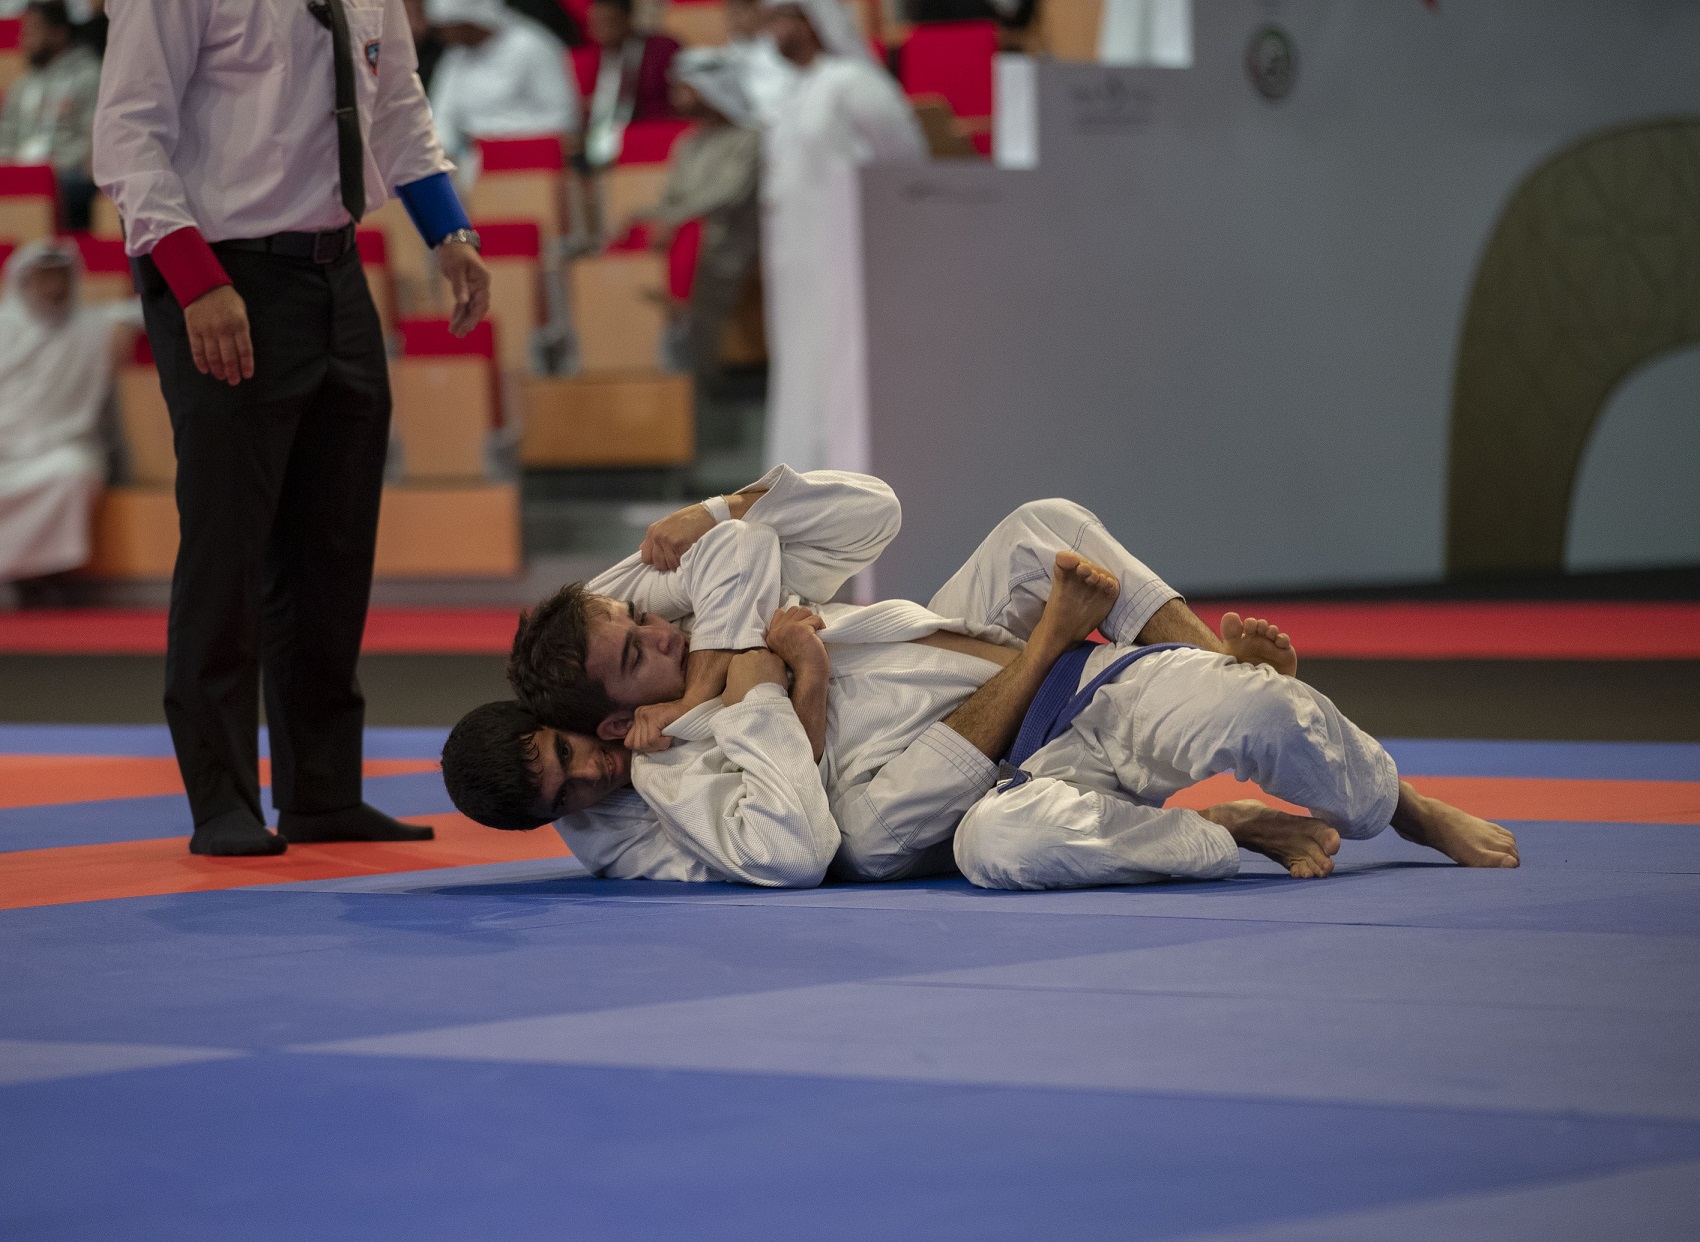 Abu Dhabi To Host Biggest Global Jiu-Jitsu Events In November As World’s Best Head ‘Home’